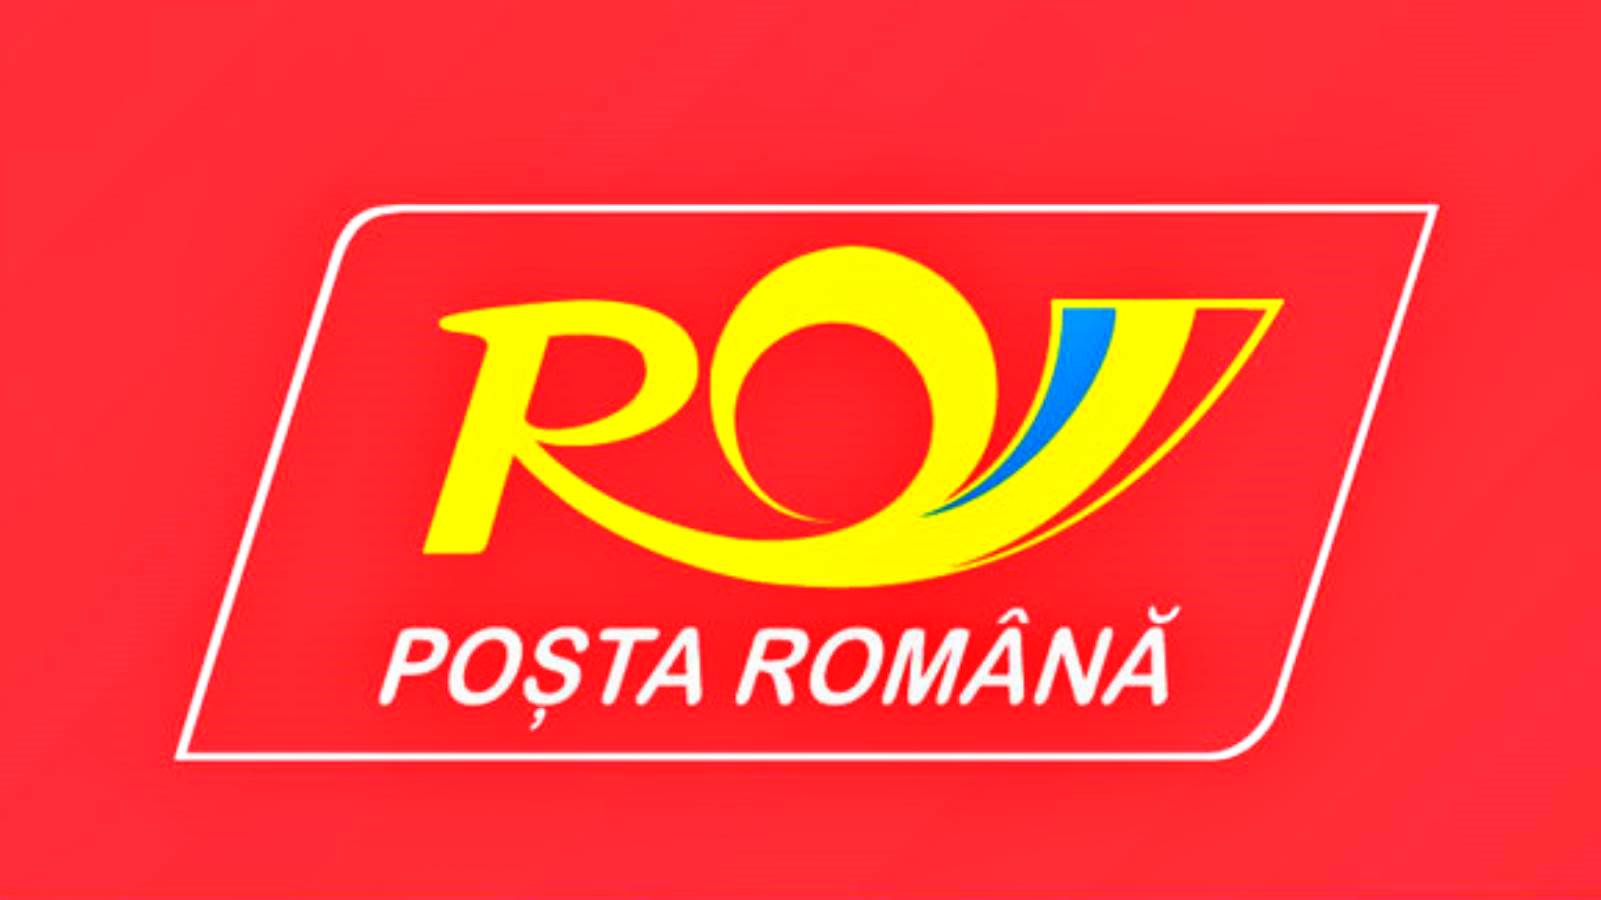 La décision de la Poste roumaine a été annoncée à des MILLIONS de Roumains